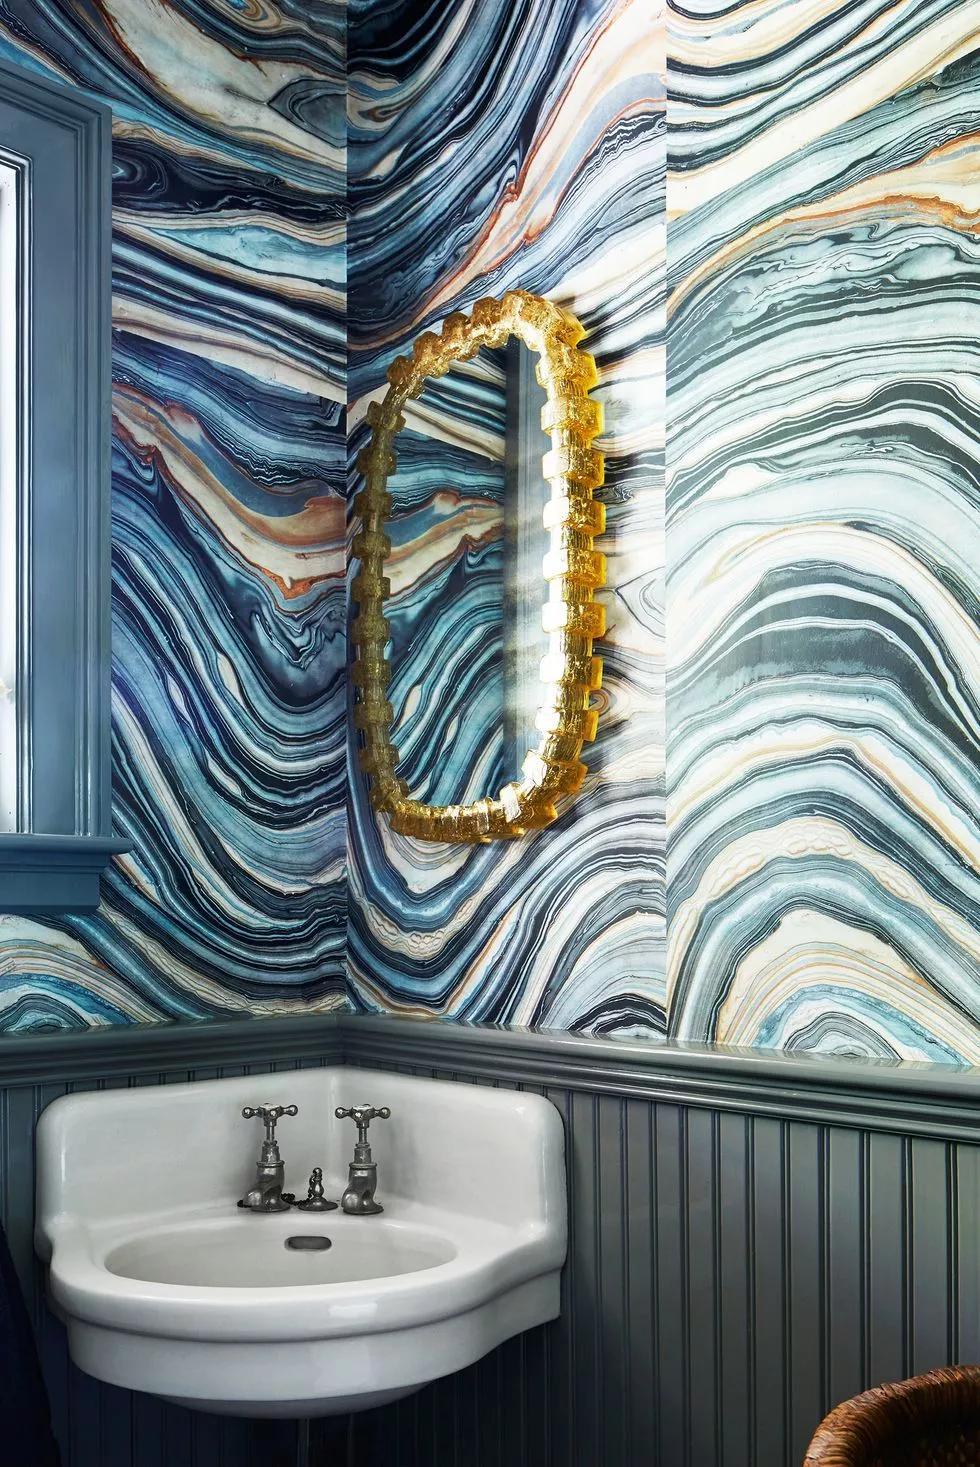 从经典印花到现代诠释 11个浴室壁纸的想法 设计